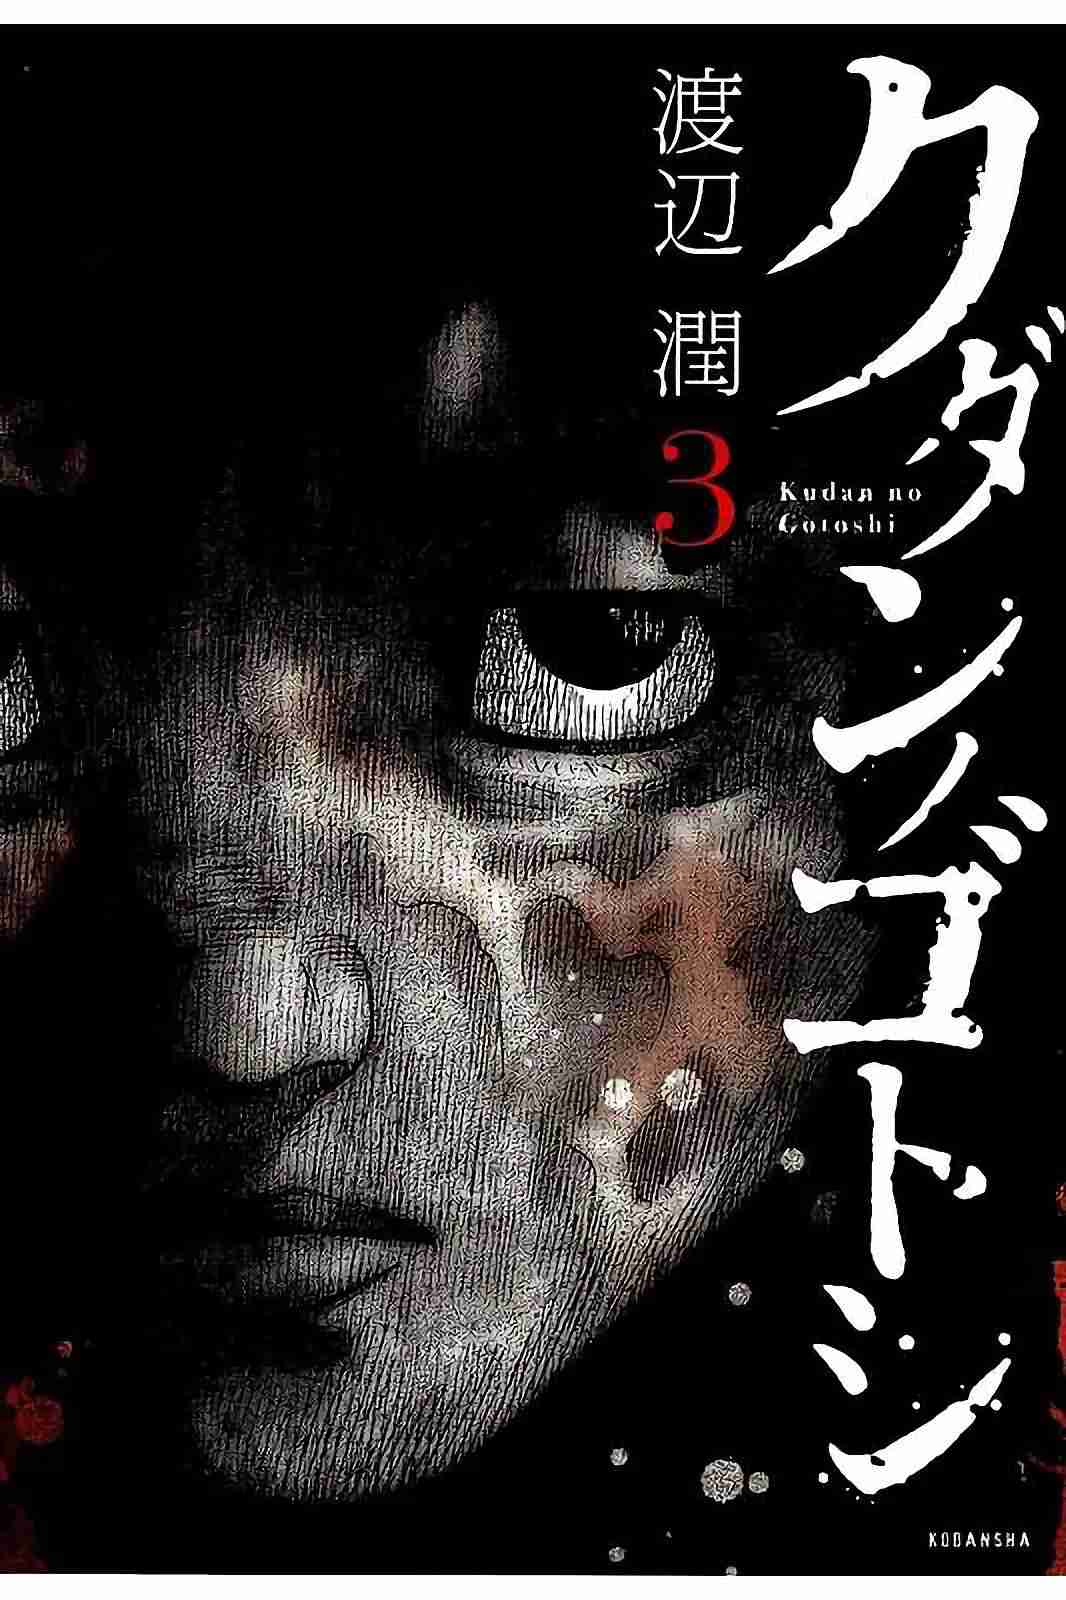 Kudan no Gotoshi Vol. 3 Ch. 23 Shinji Fujisawa < Part 8 > Mai Kawai < Part 2 >